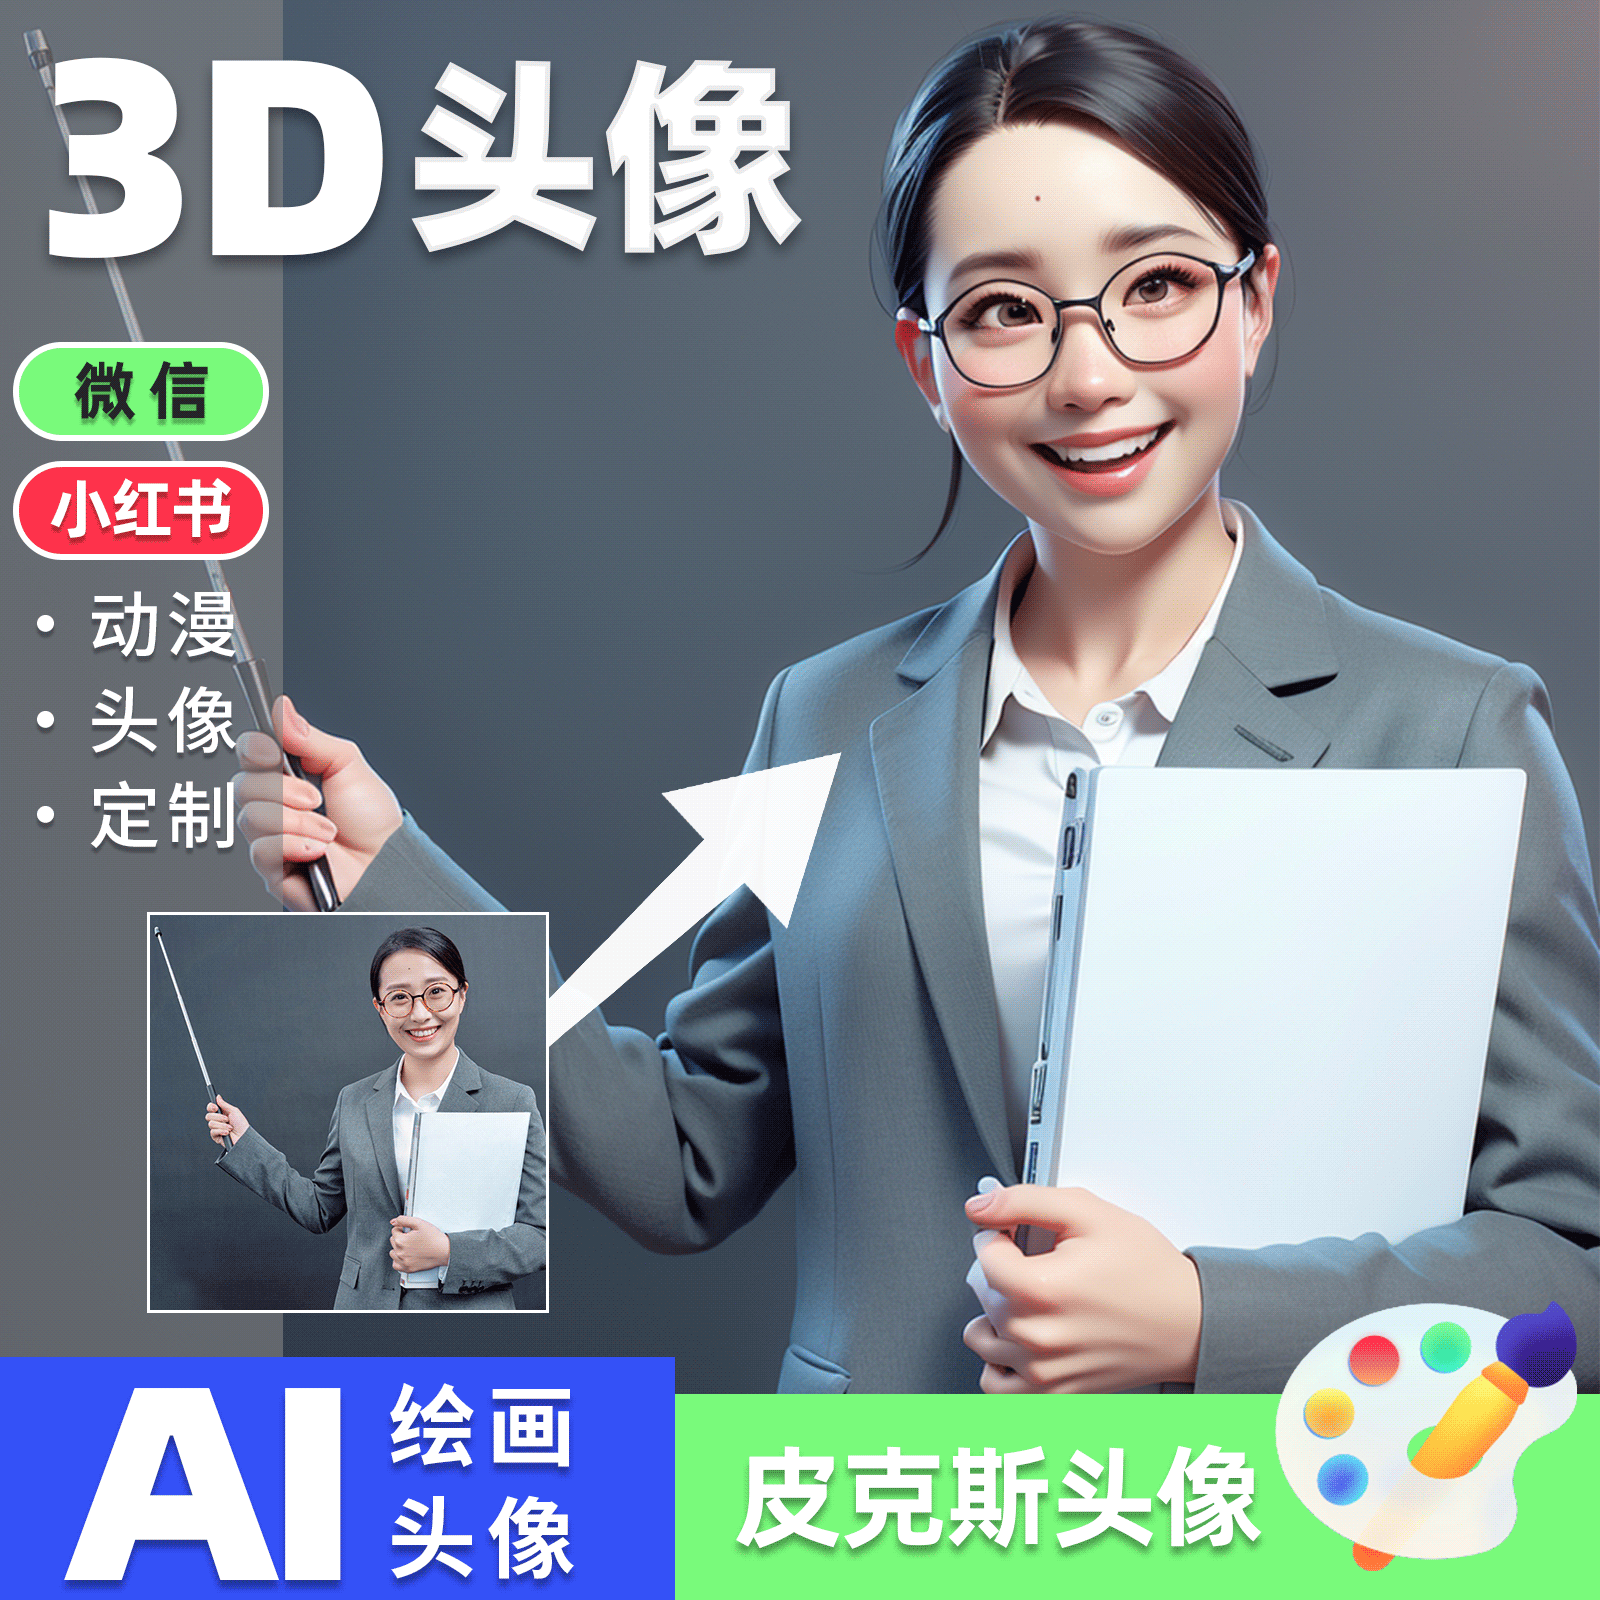 AI动漫头像微信头像小红书证件照人像精修Q版形象照职业照3D风格